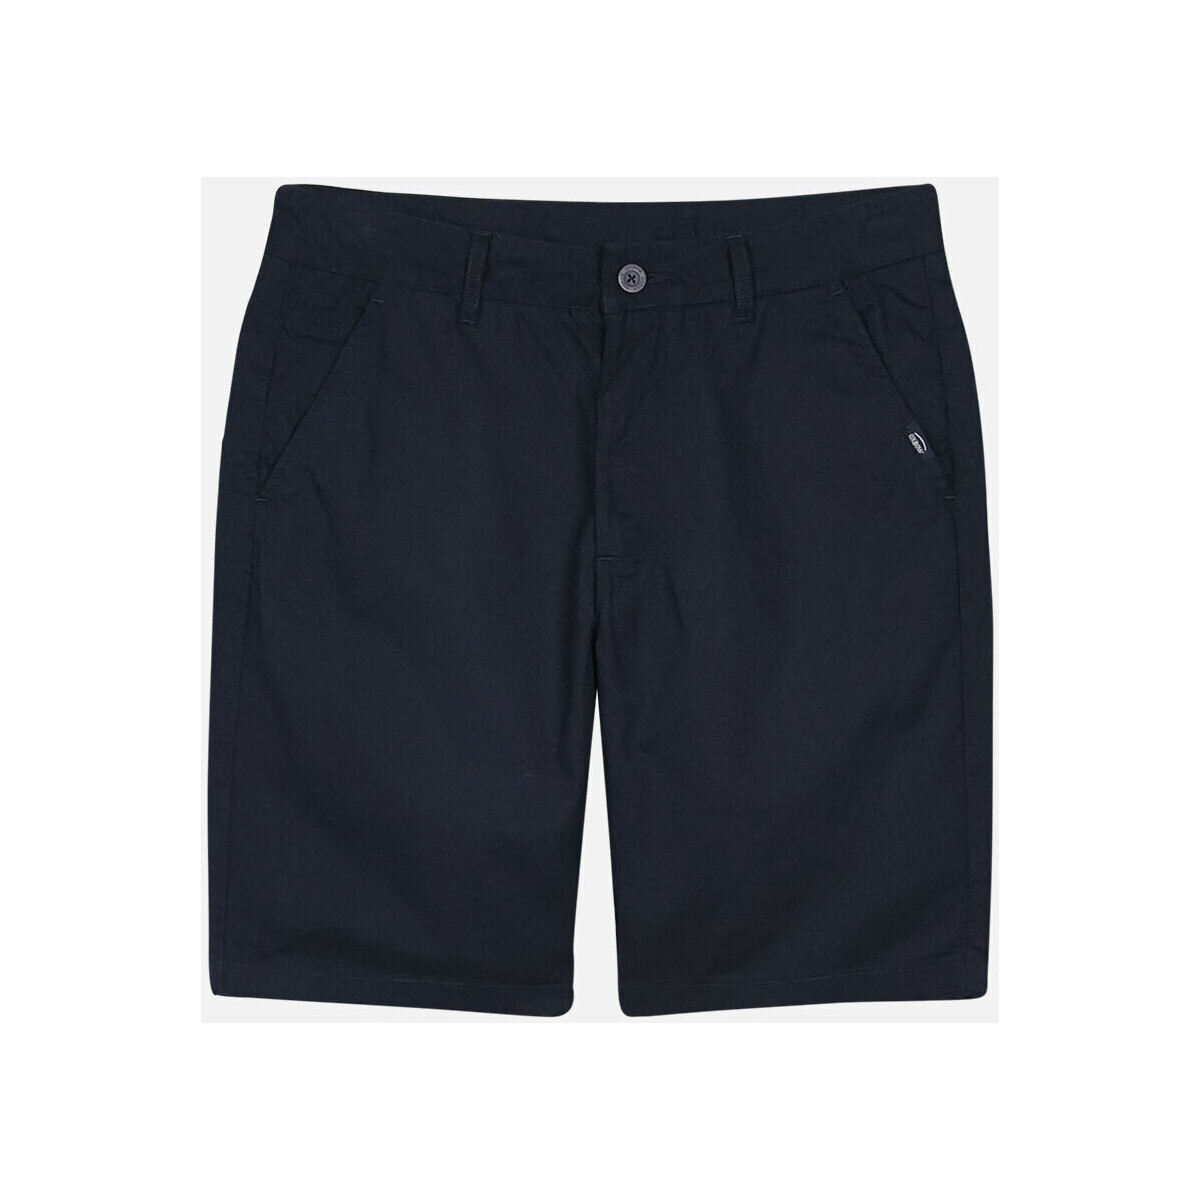 Kleidung Herren Shorts / Bermudas Oxbow Short OTUI Blau